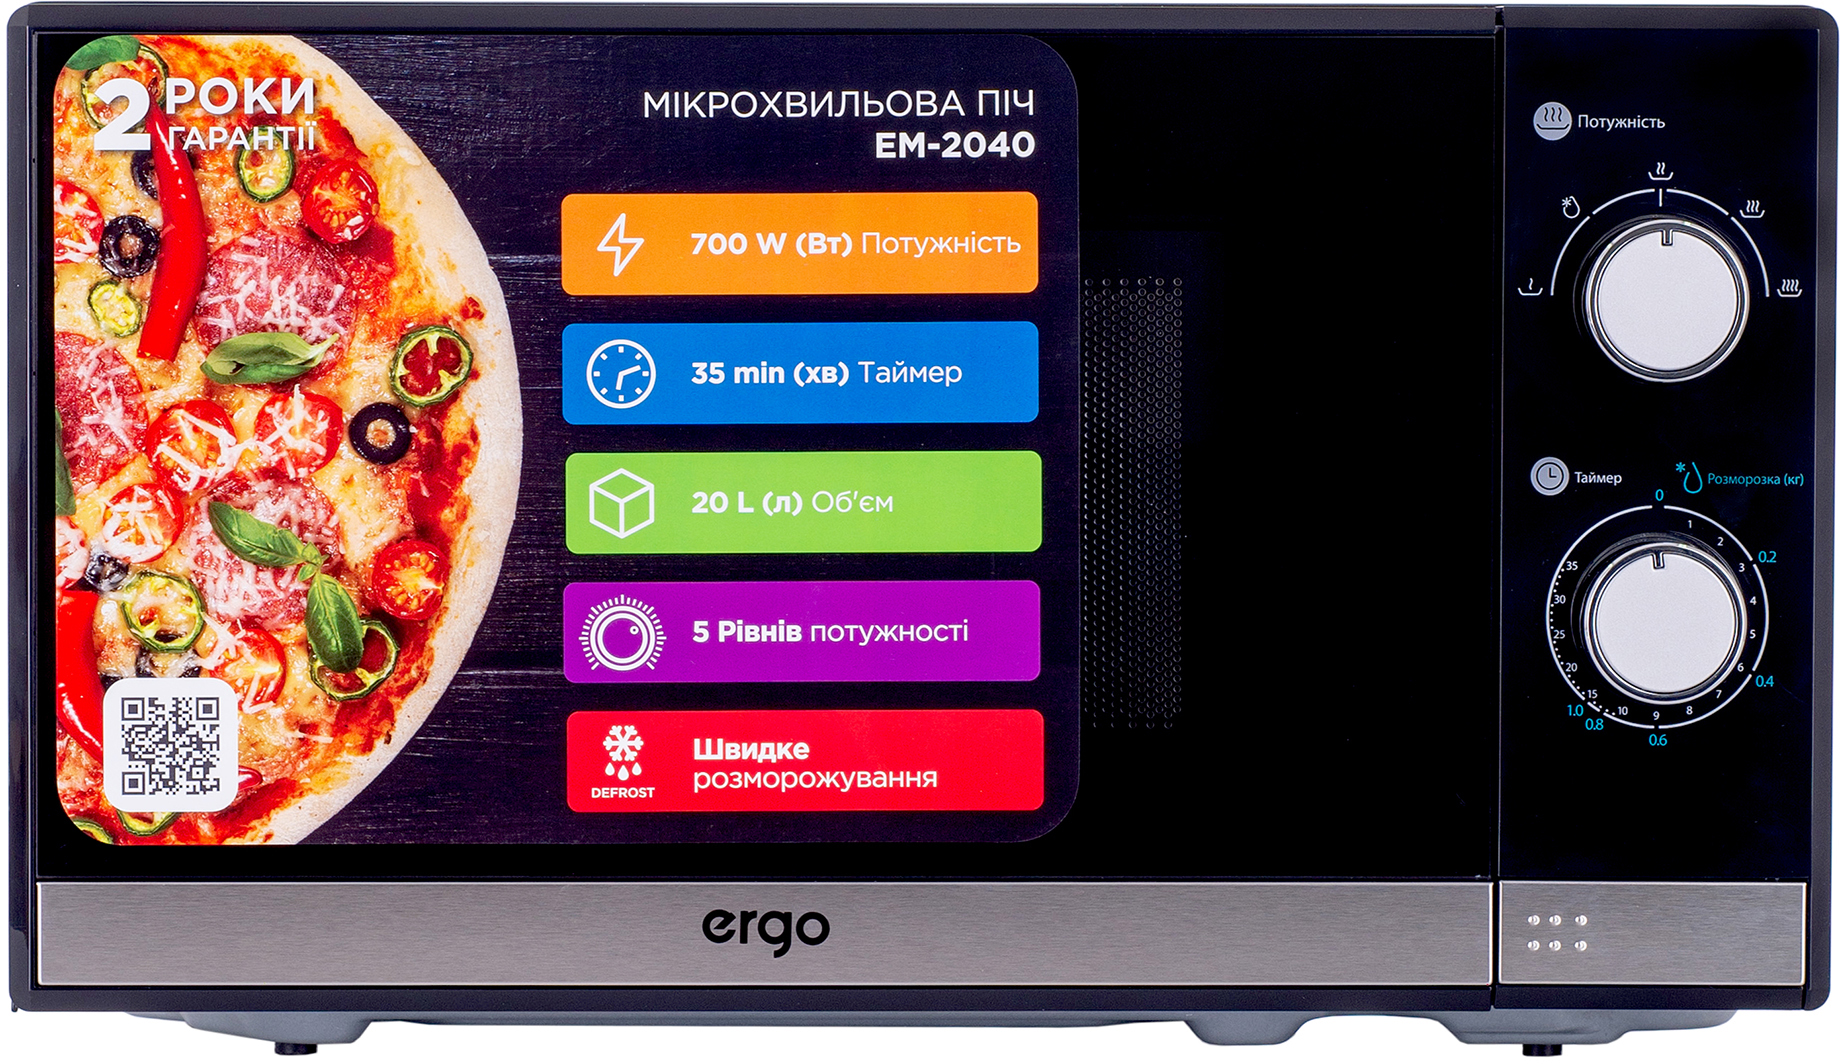 Микроволновая печь Ergo EM-2040 цена 3070.50 грн - фотография 2